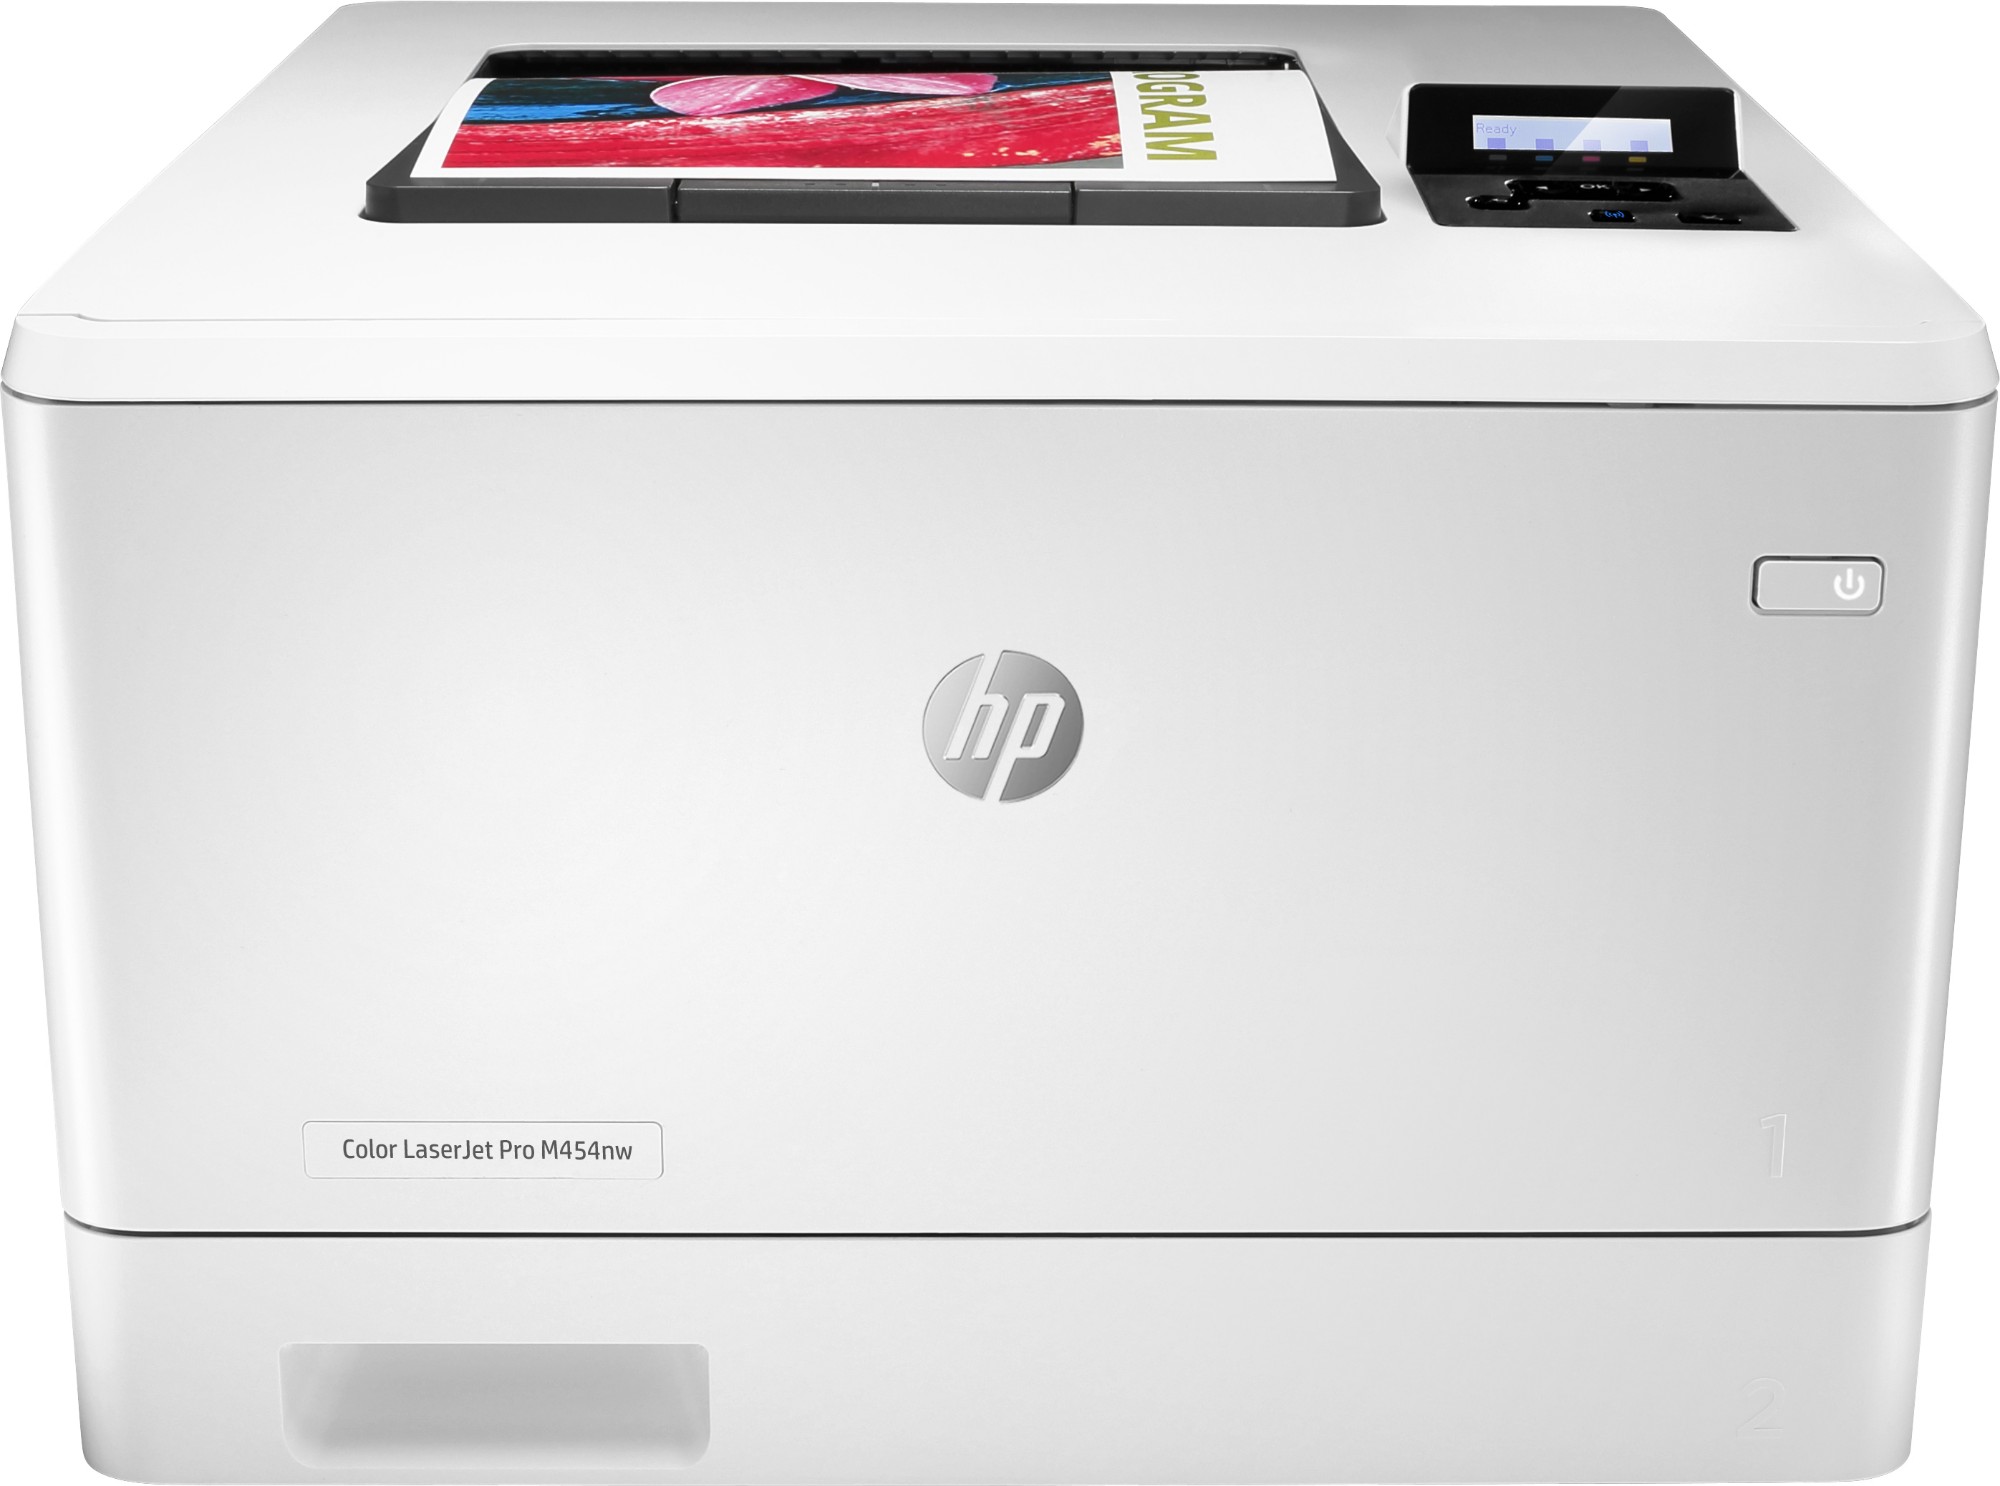 Náplne do tlačiarne HP Color LaserJet Pro M454nw